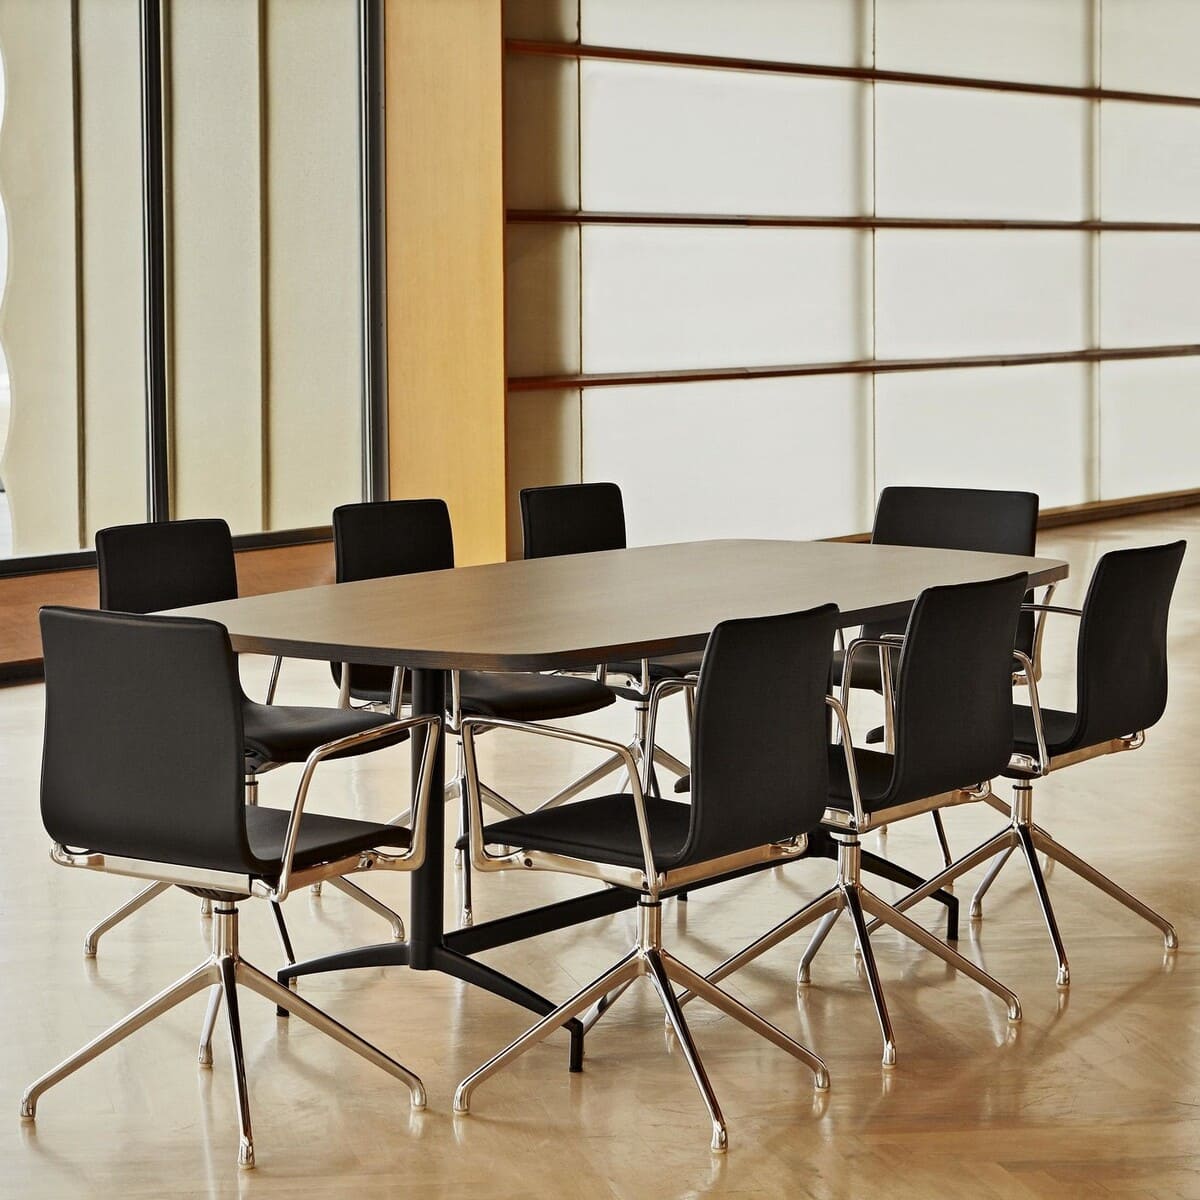 Table de réunion CARMA avec un piètement noir et un plateau mélaminé bois. Un exemple d'élégance dans le monde du mobilier de bureau.